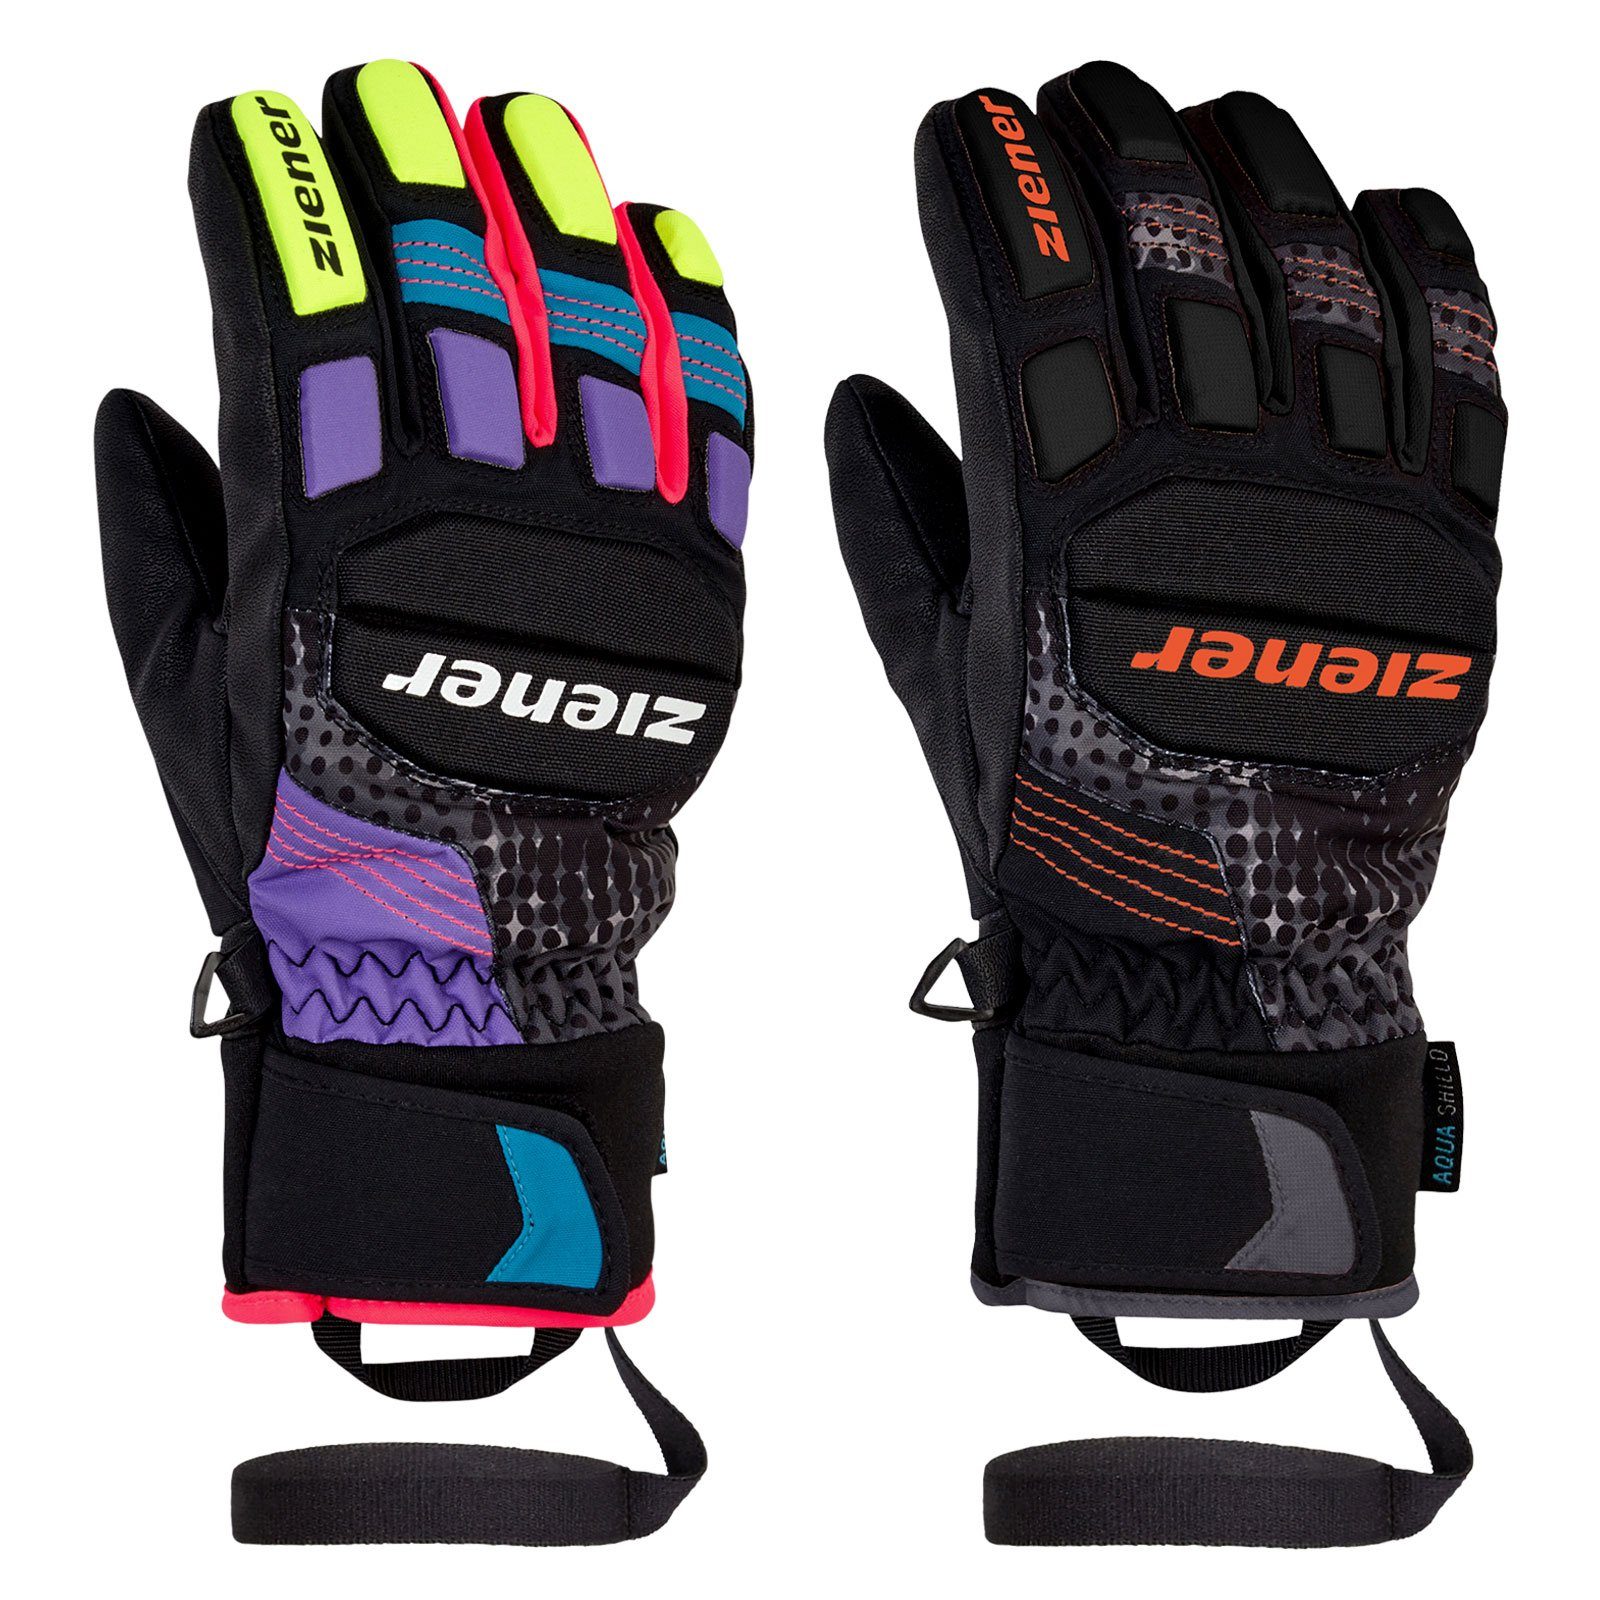 Ziener Skihandschuhe Luro AS aufgedrucktem Glove junior mit Markenlogo PR